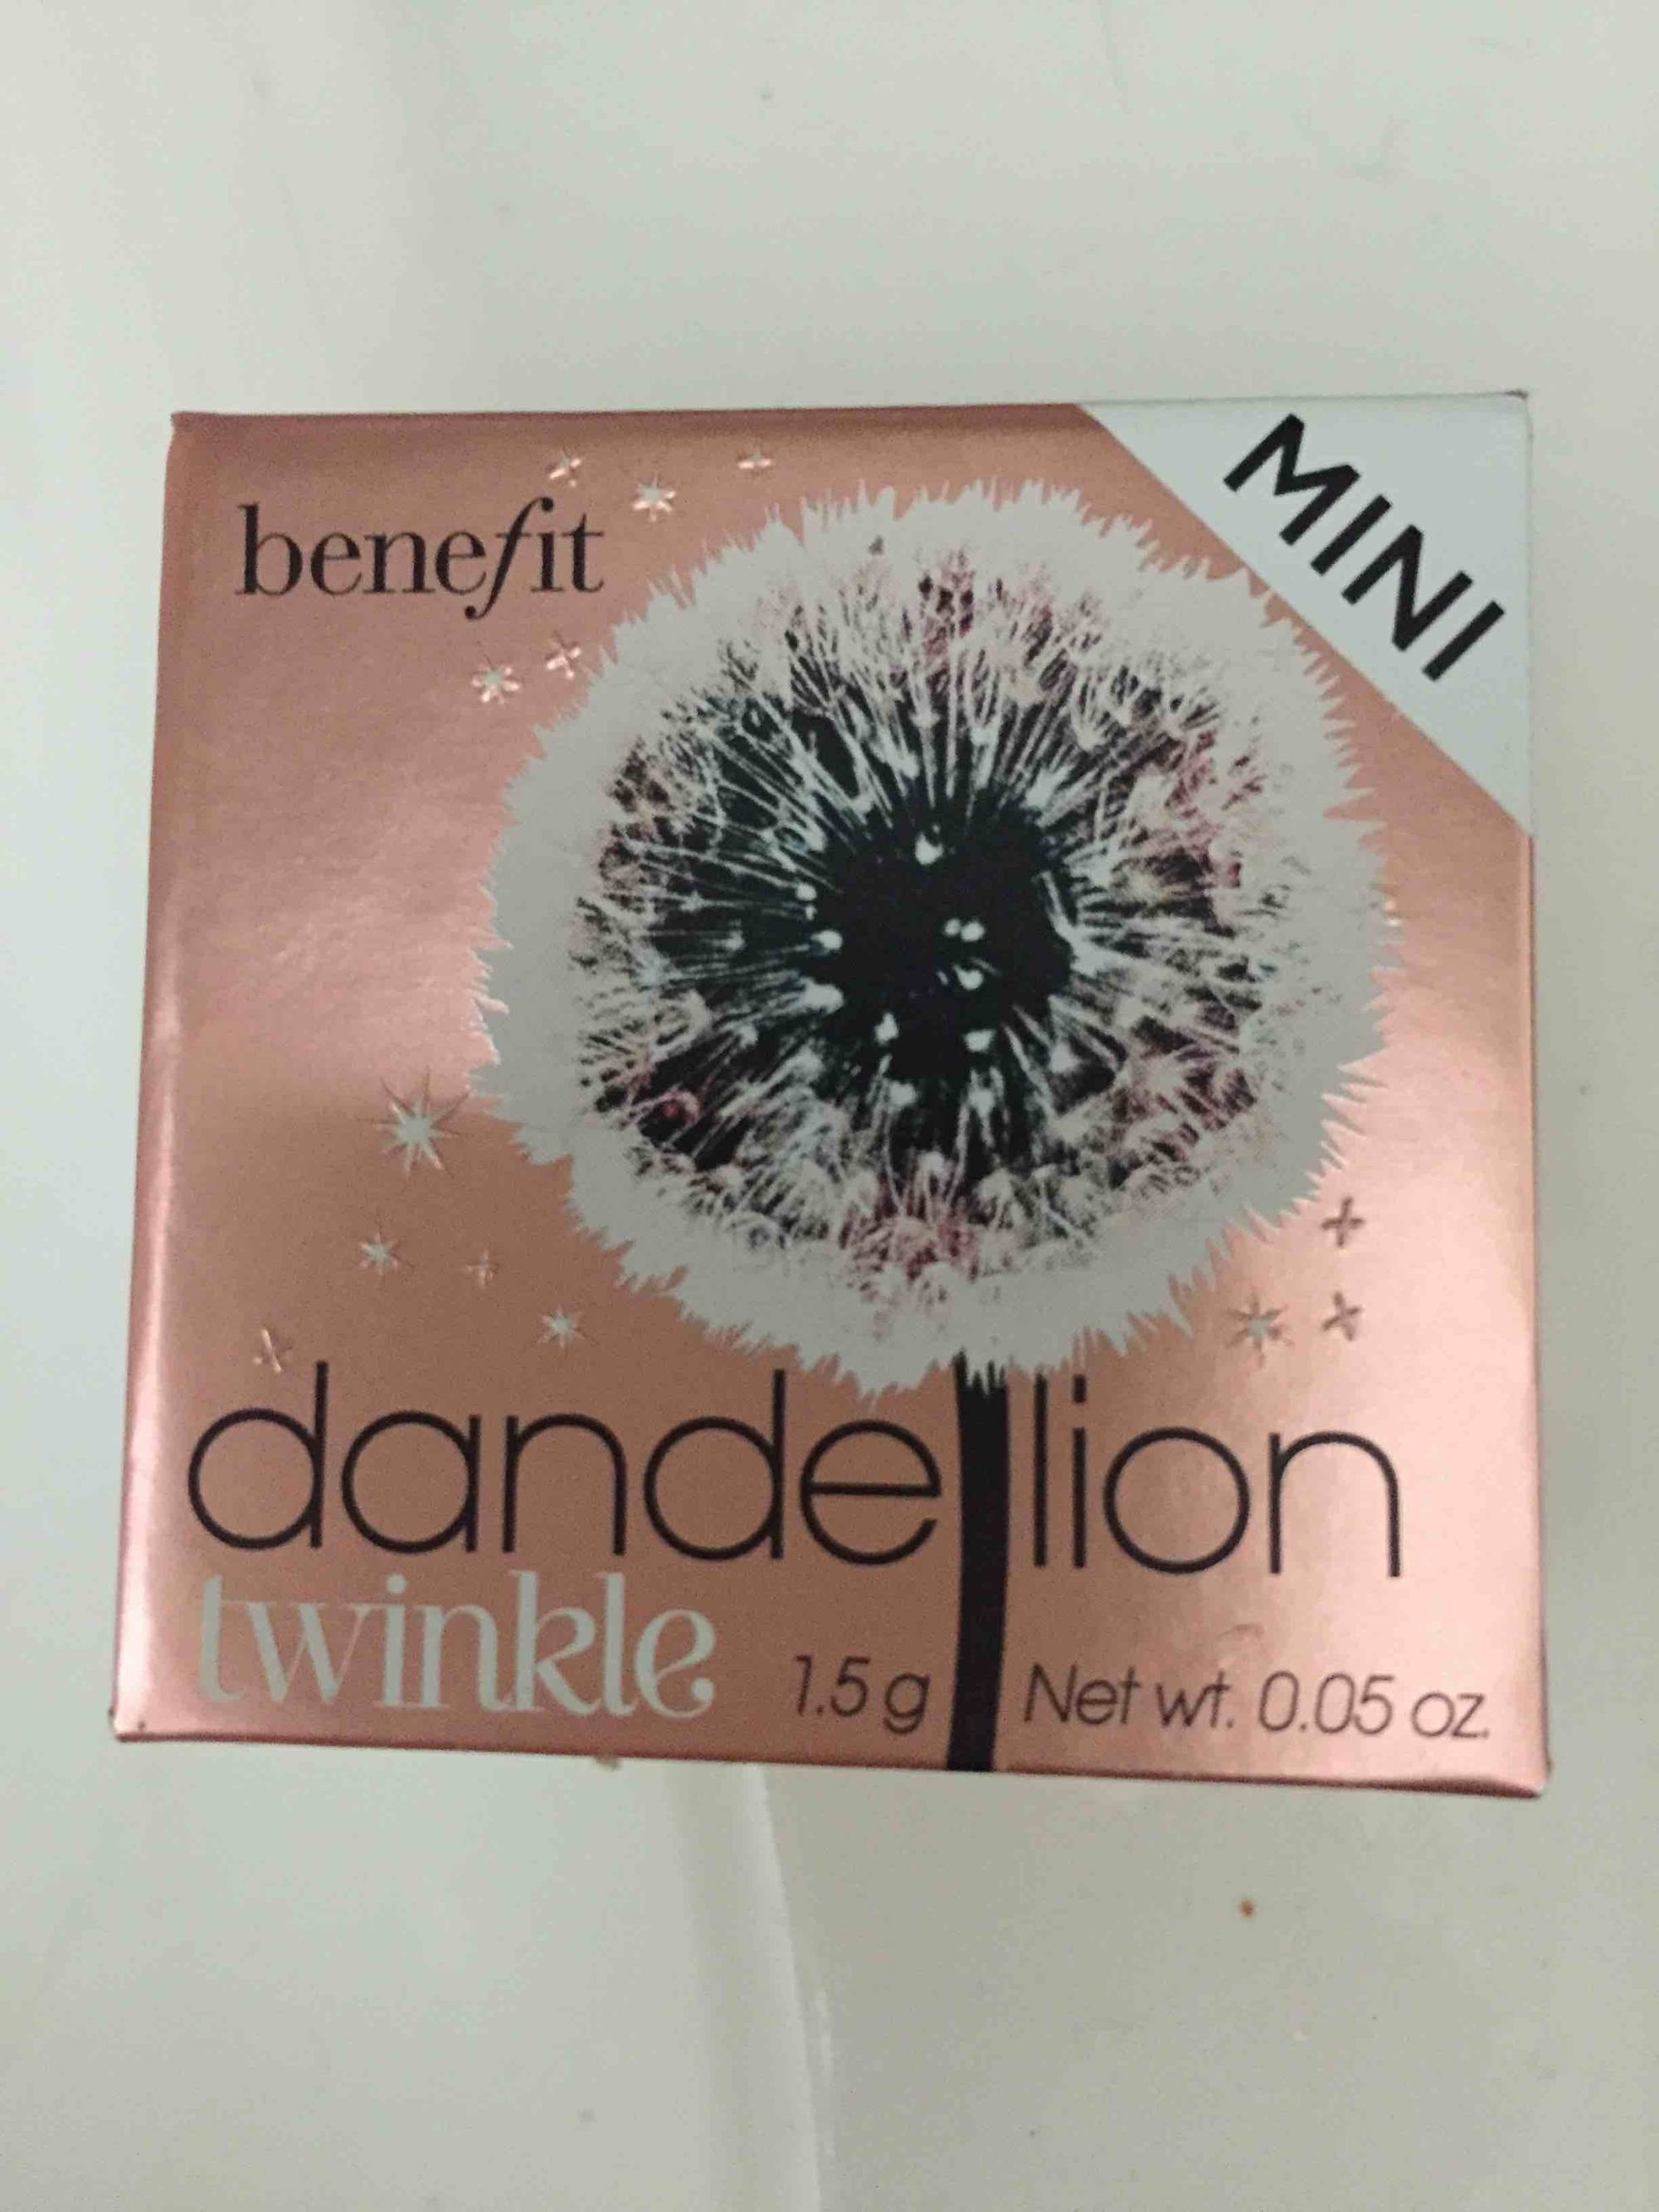 BENEFIT - Dandelion twinkle